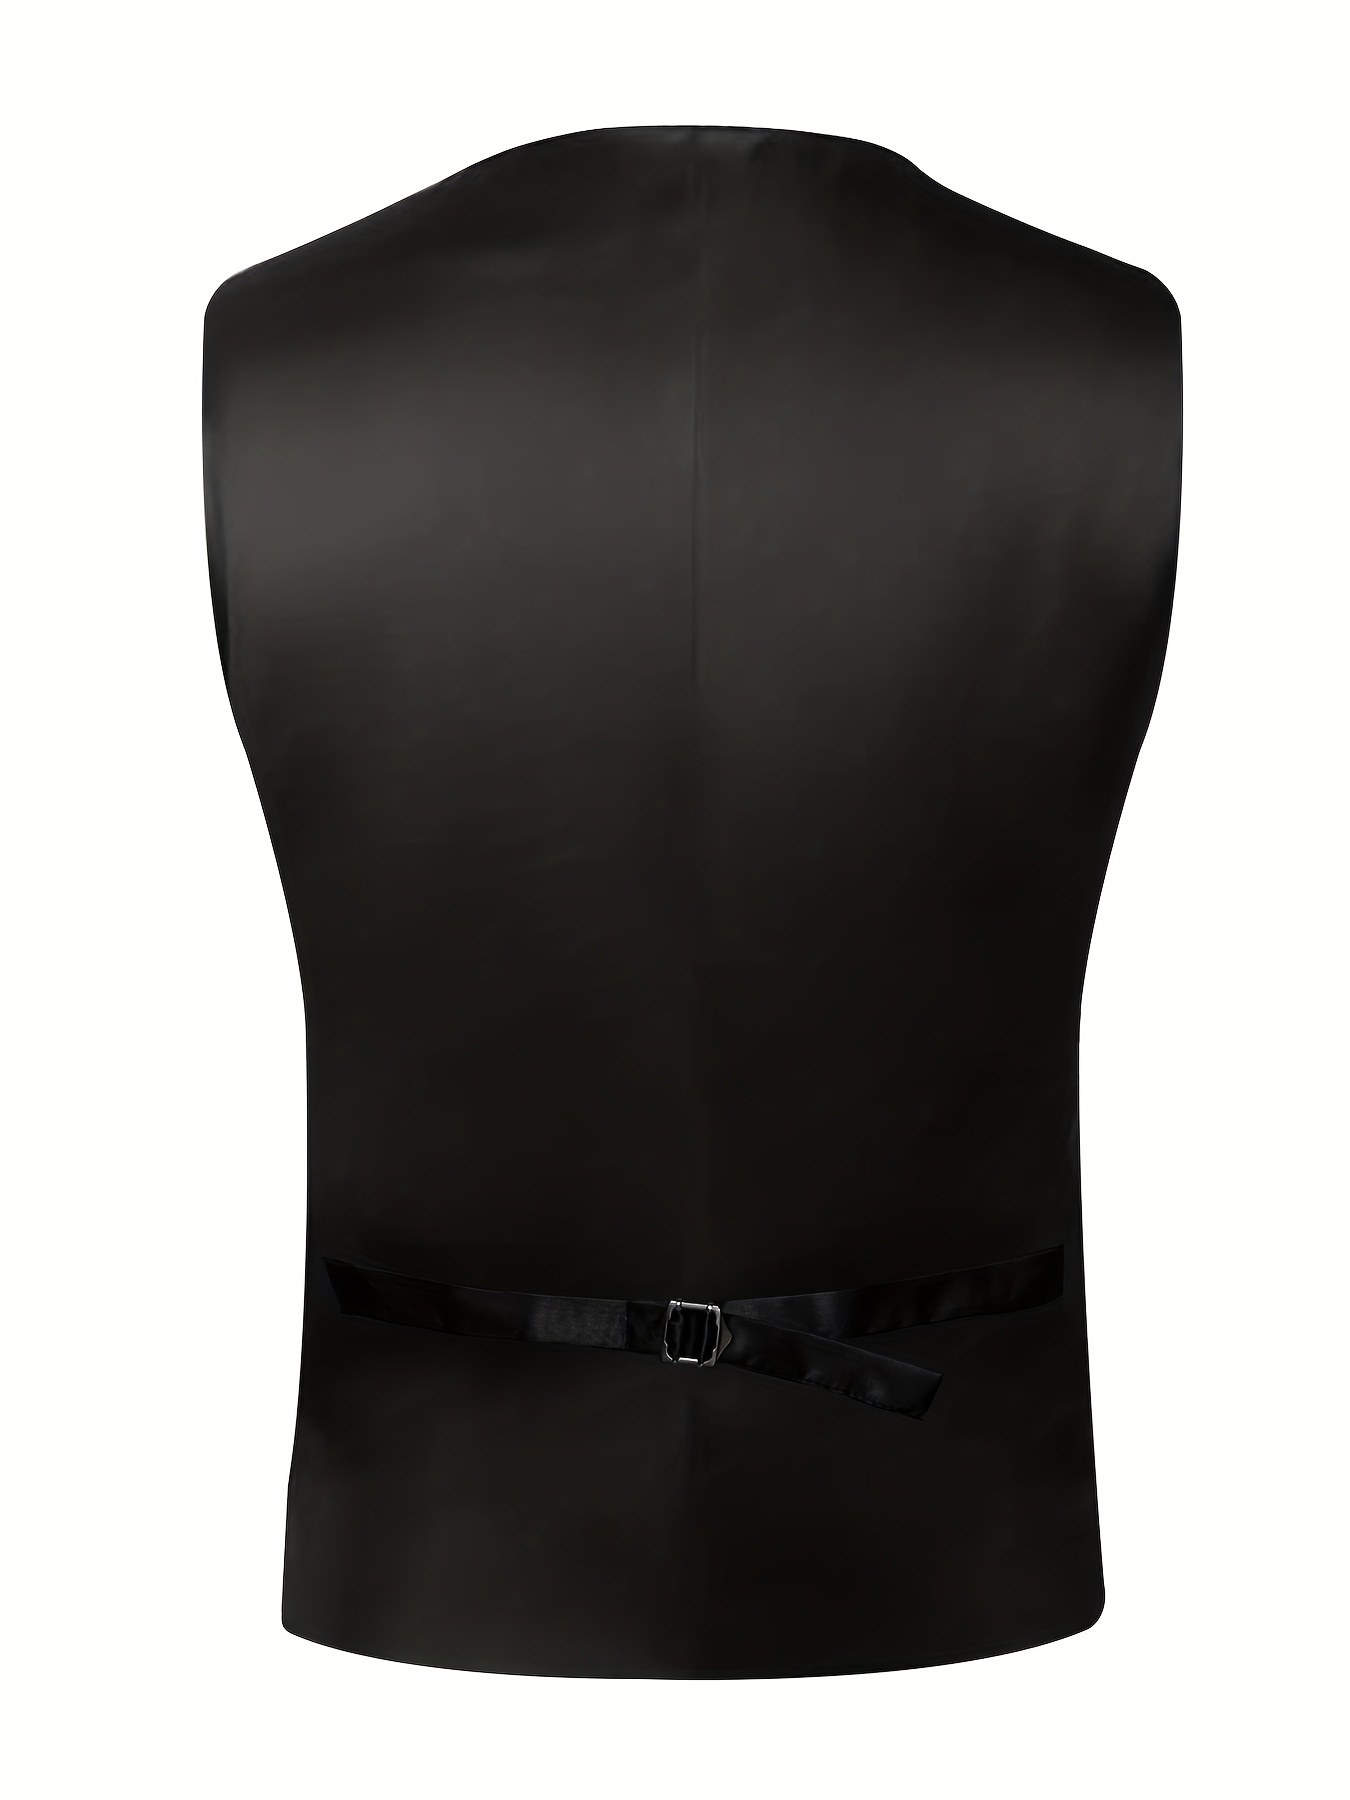 Plus Size Mens Gold Black Flora Silk V Neck Vest Suit Waistcoat Necktie  Square Hanky Cufflinks 4pcs Set For Wedding Suit Set, Buy More, Save More